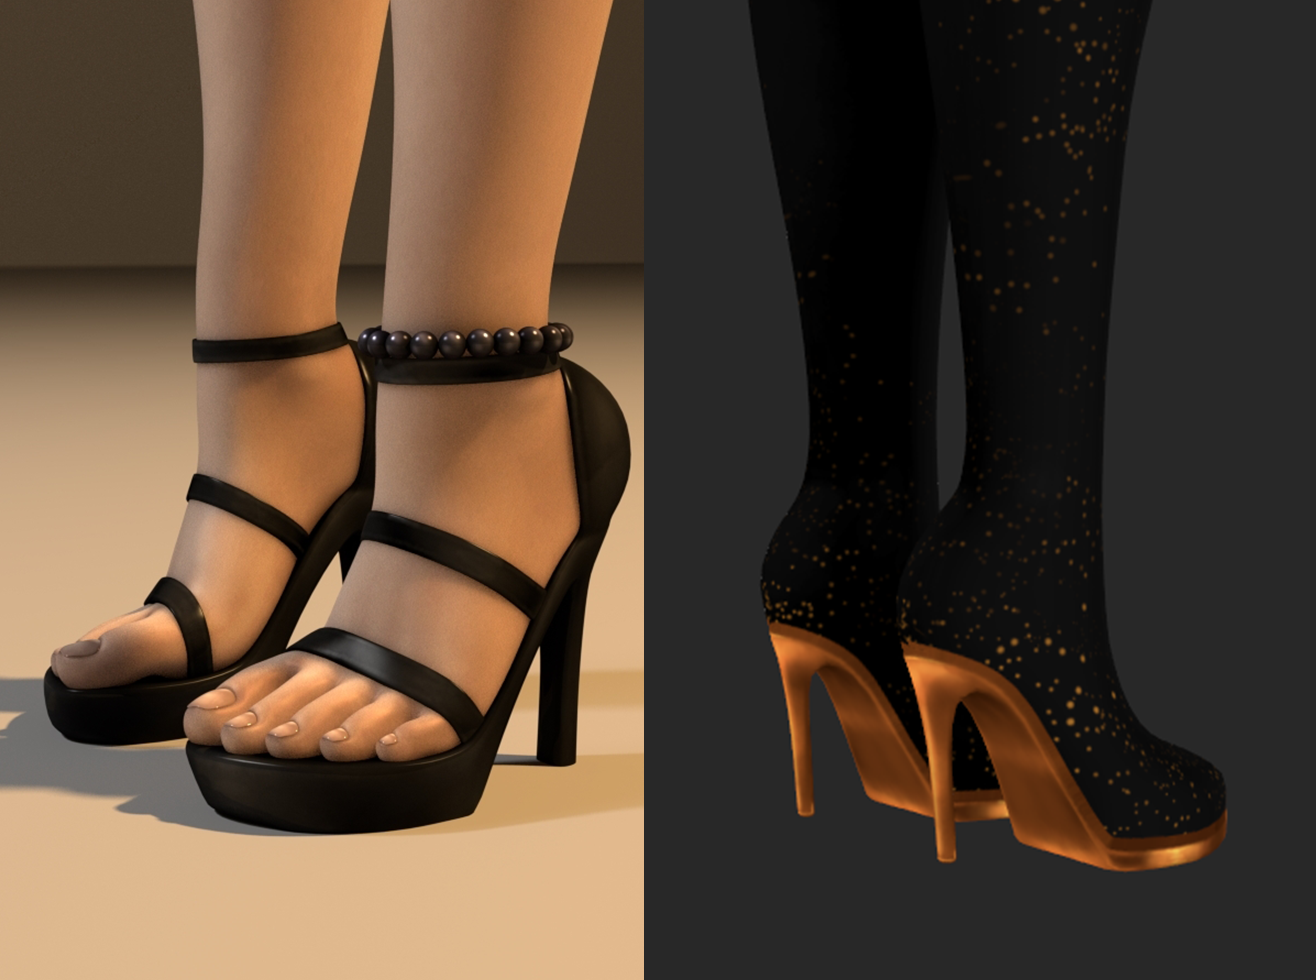 Shoes / heels